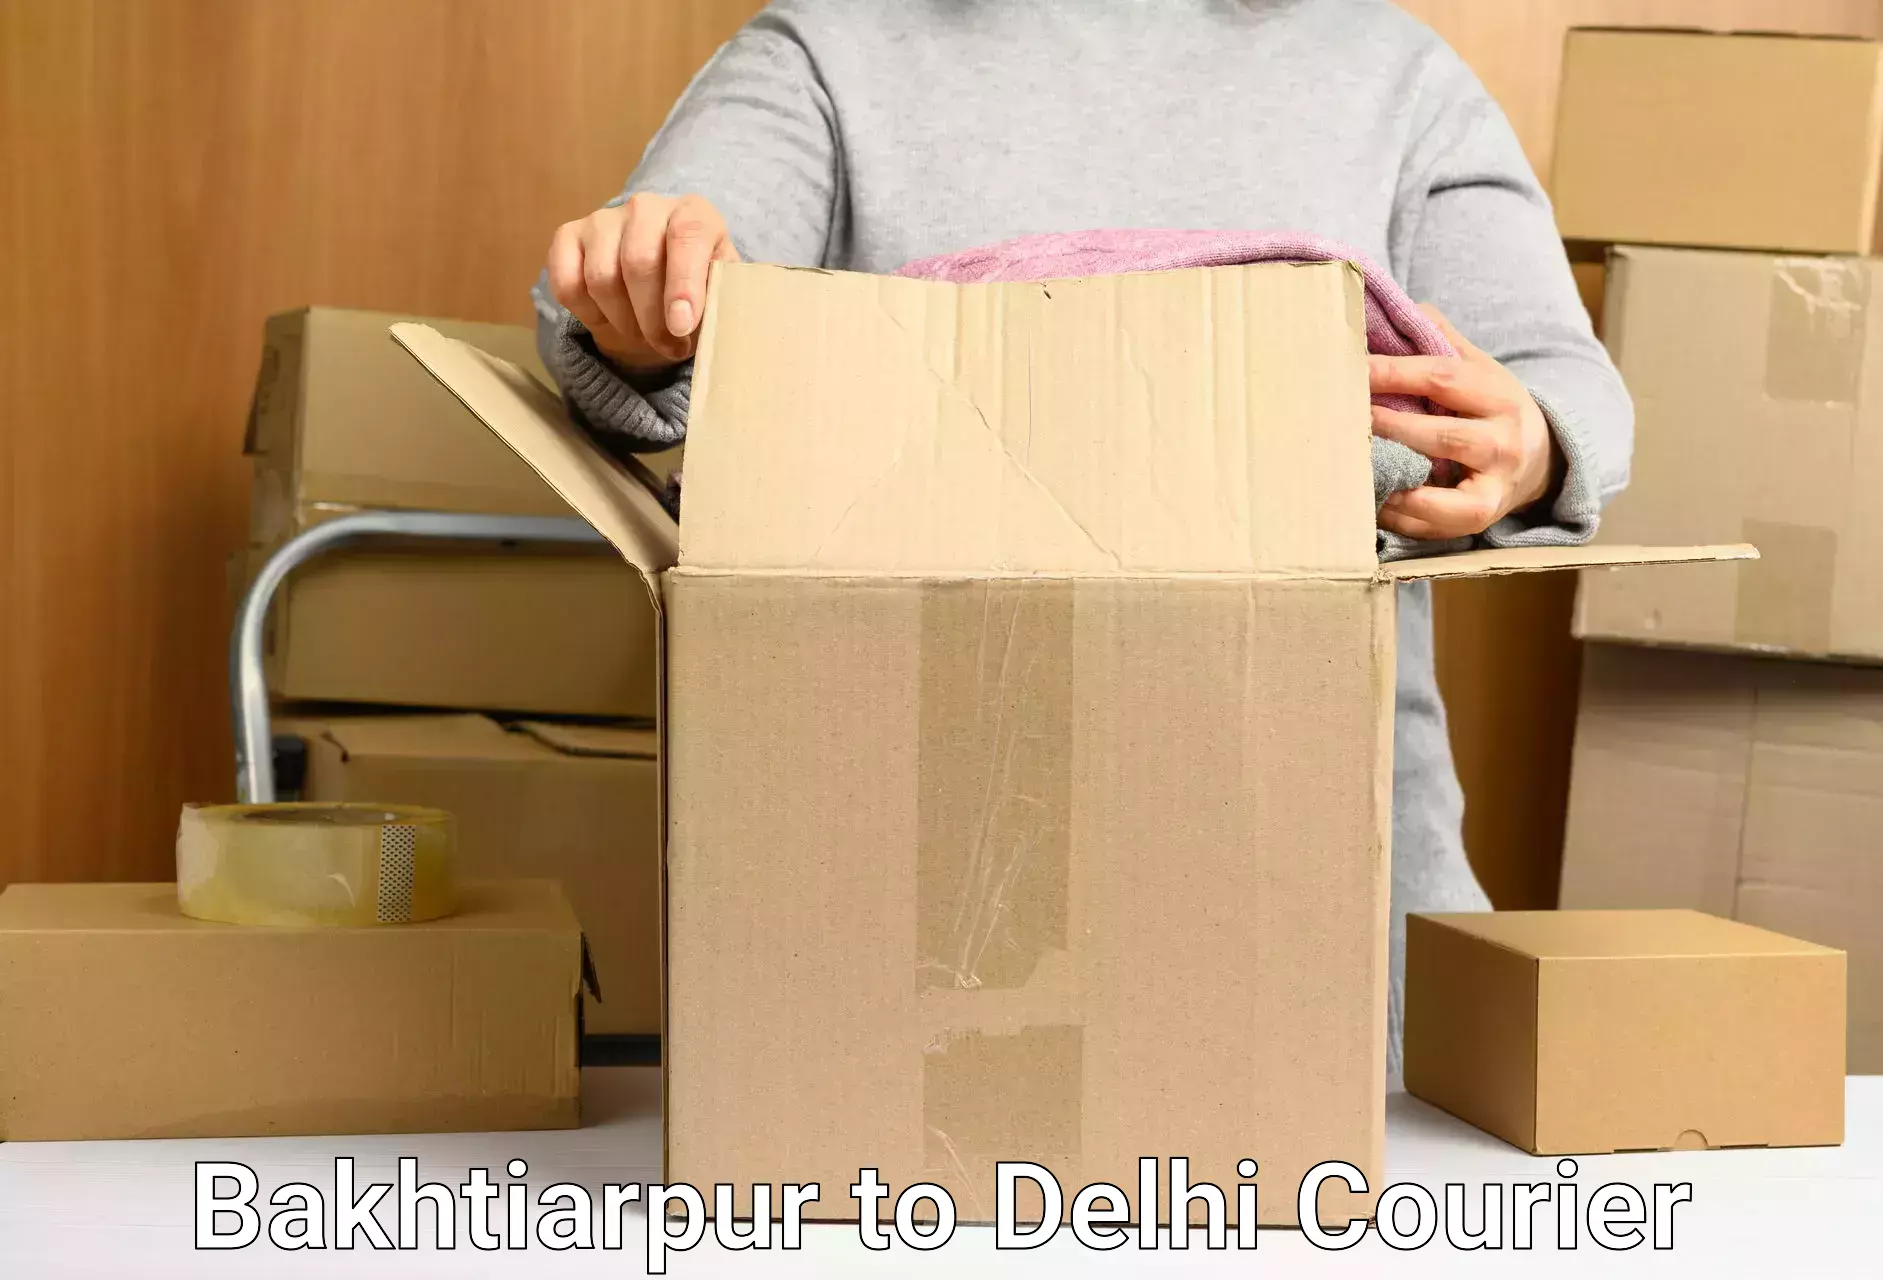 Smart logistics solutions Bakhtiarpur to NIT Delhi